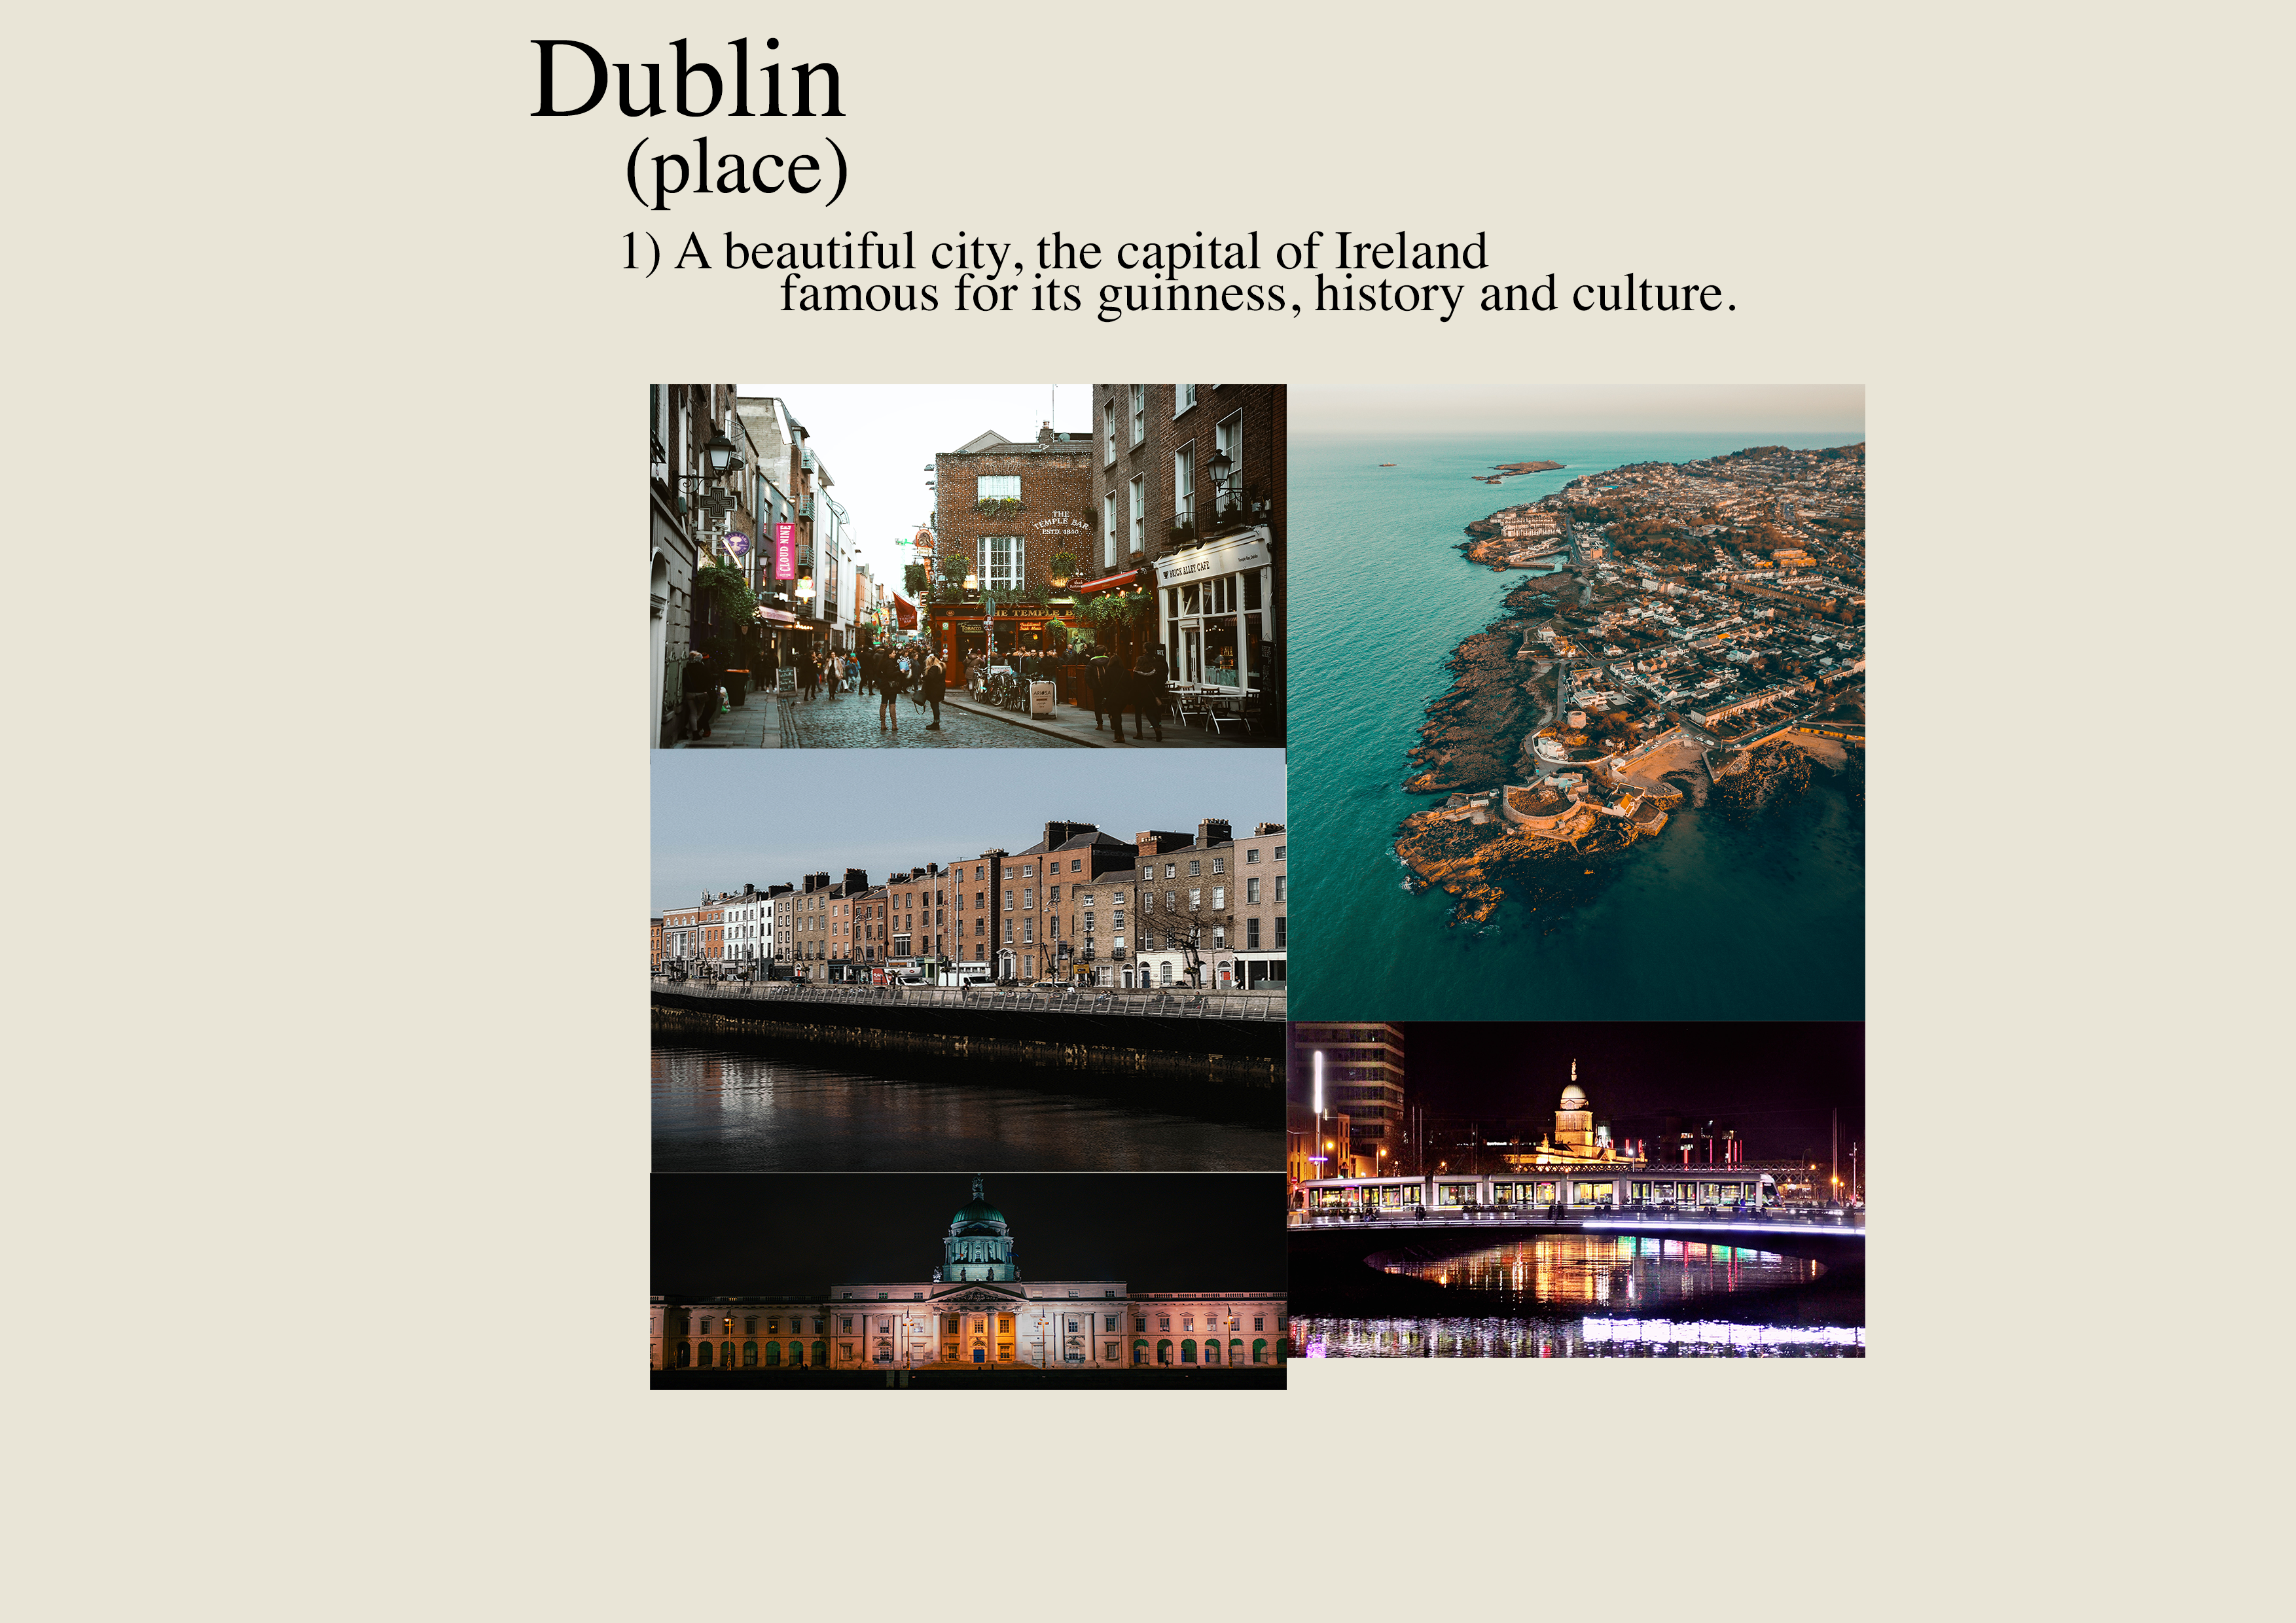 Dublin city guide